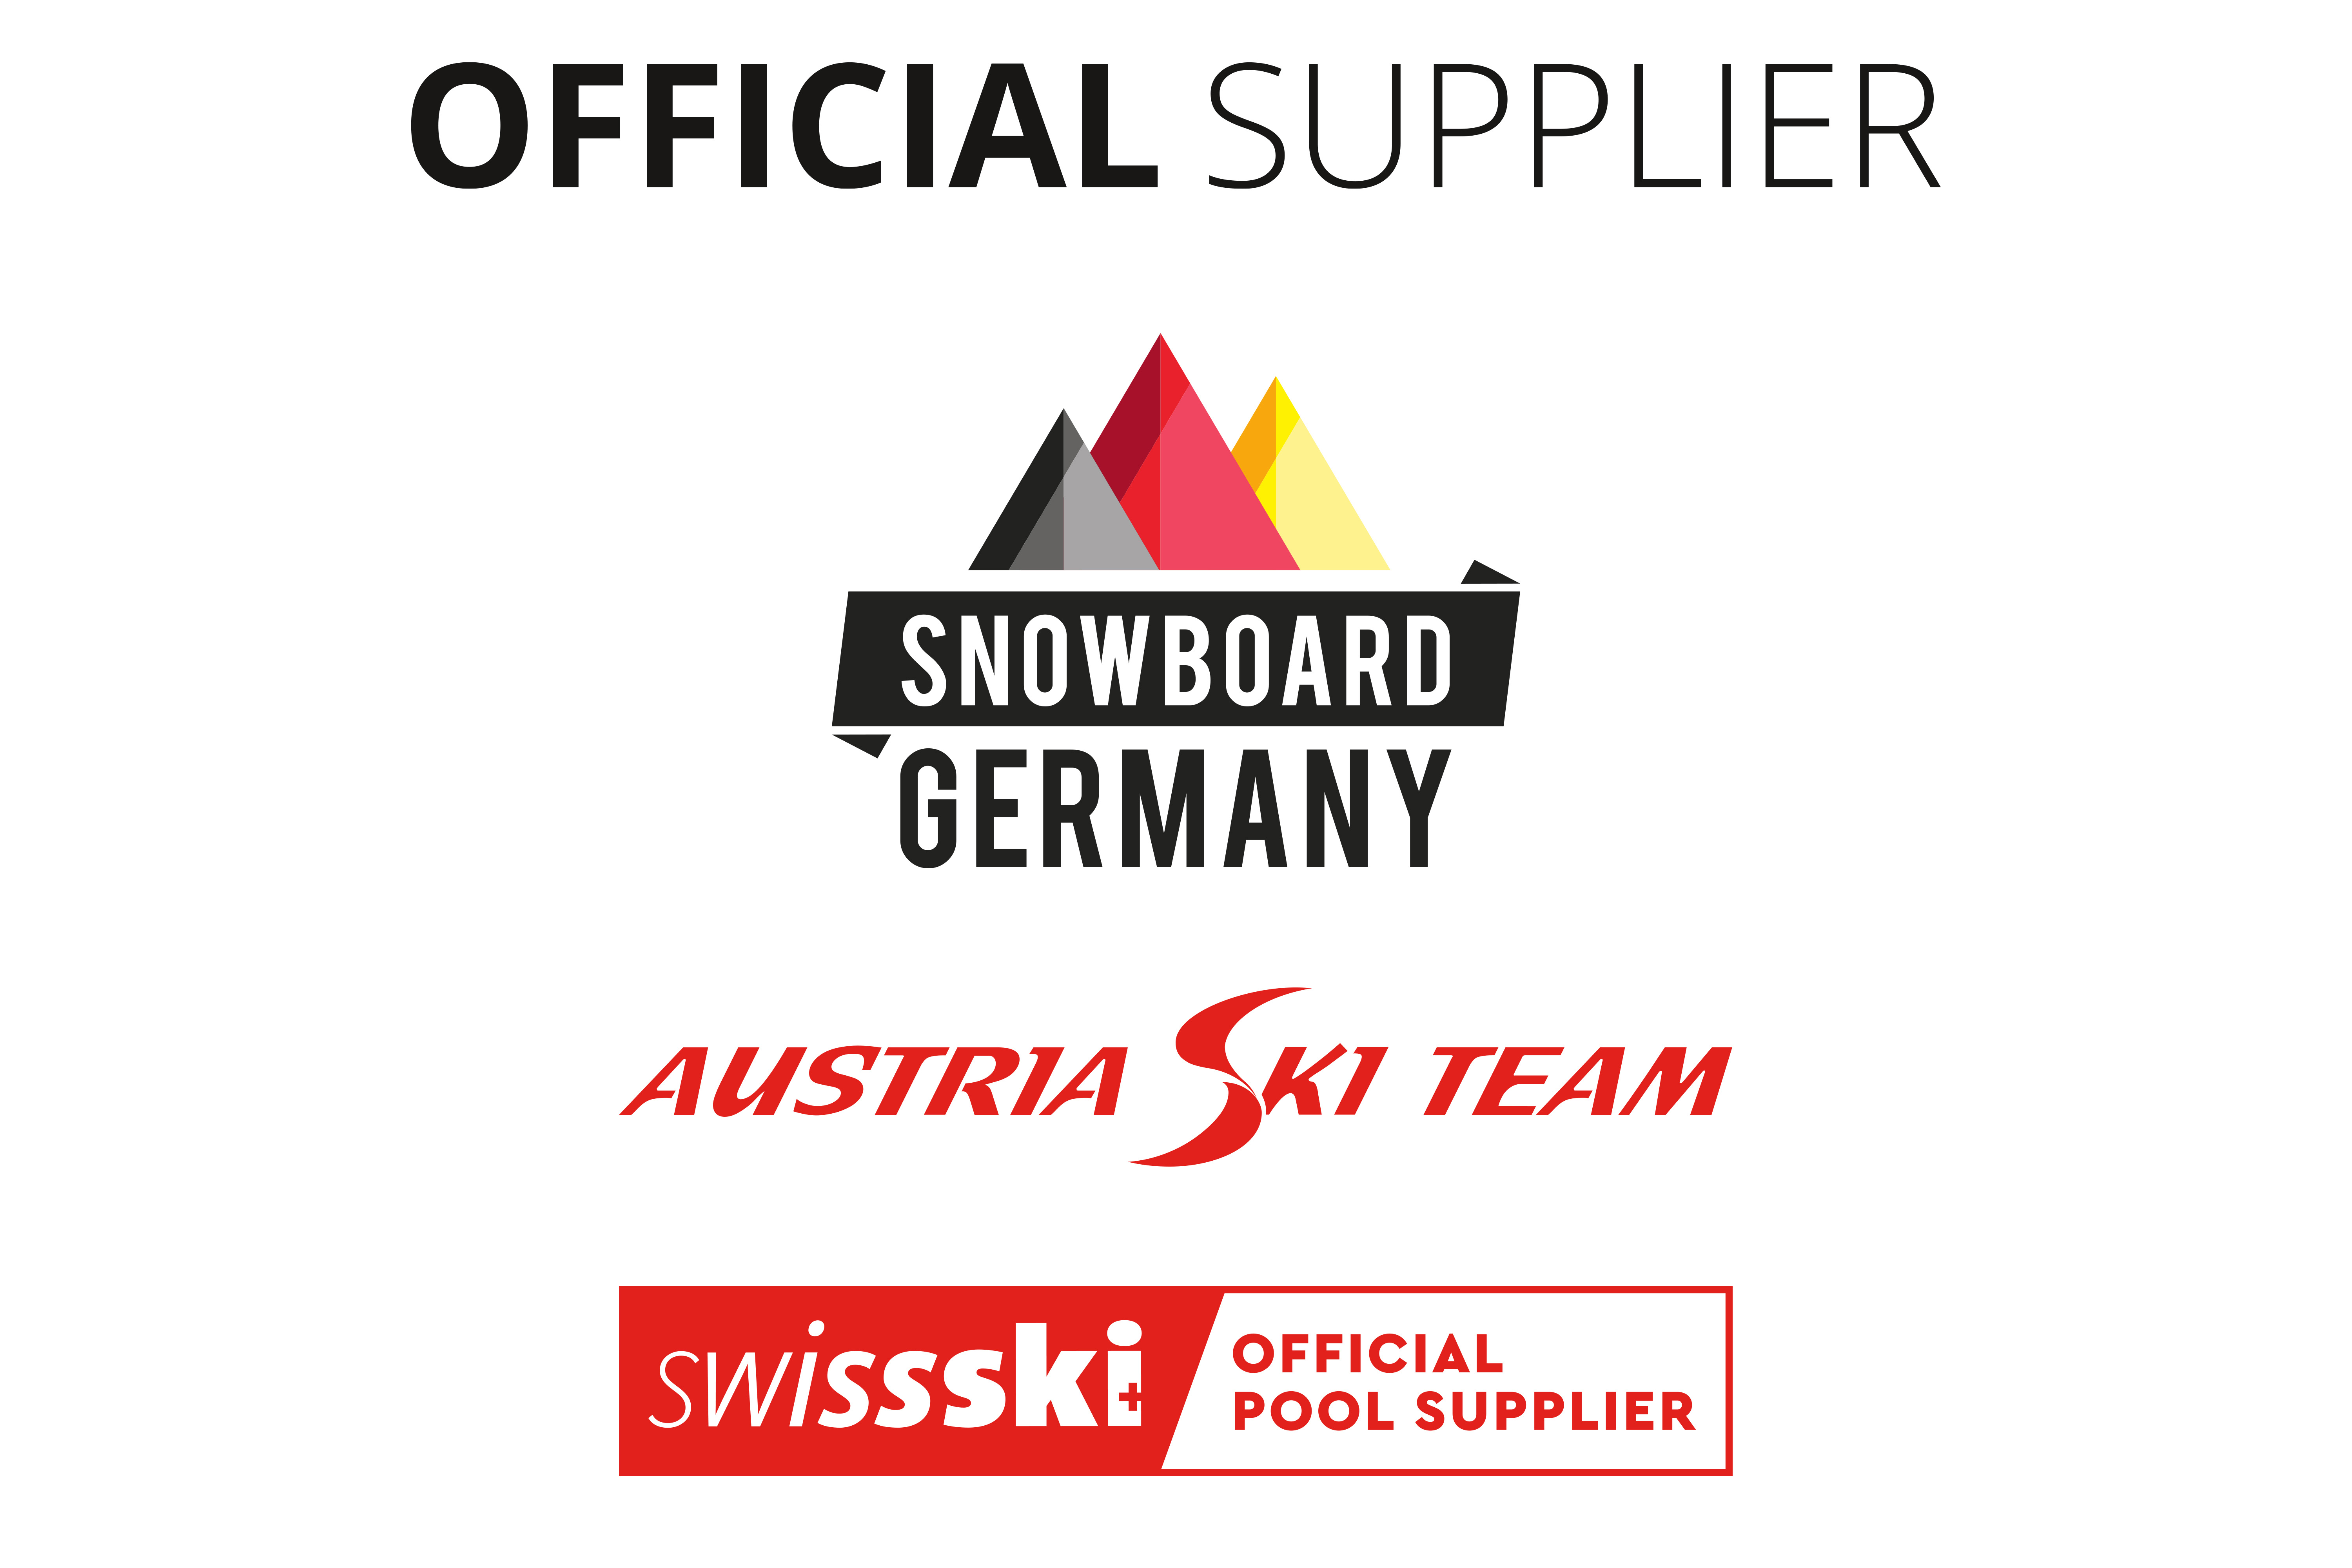 ALT: Bild mit Logos von Swissski, Austria Ski Team und Snowboard Germany